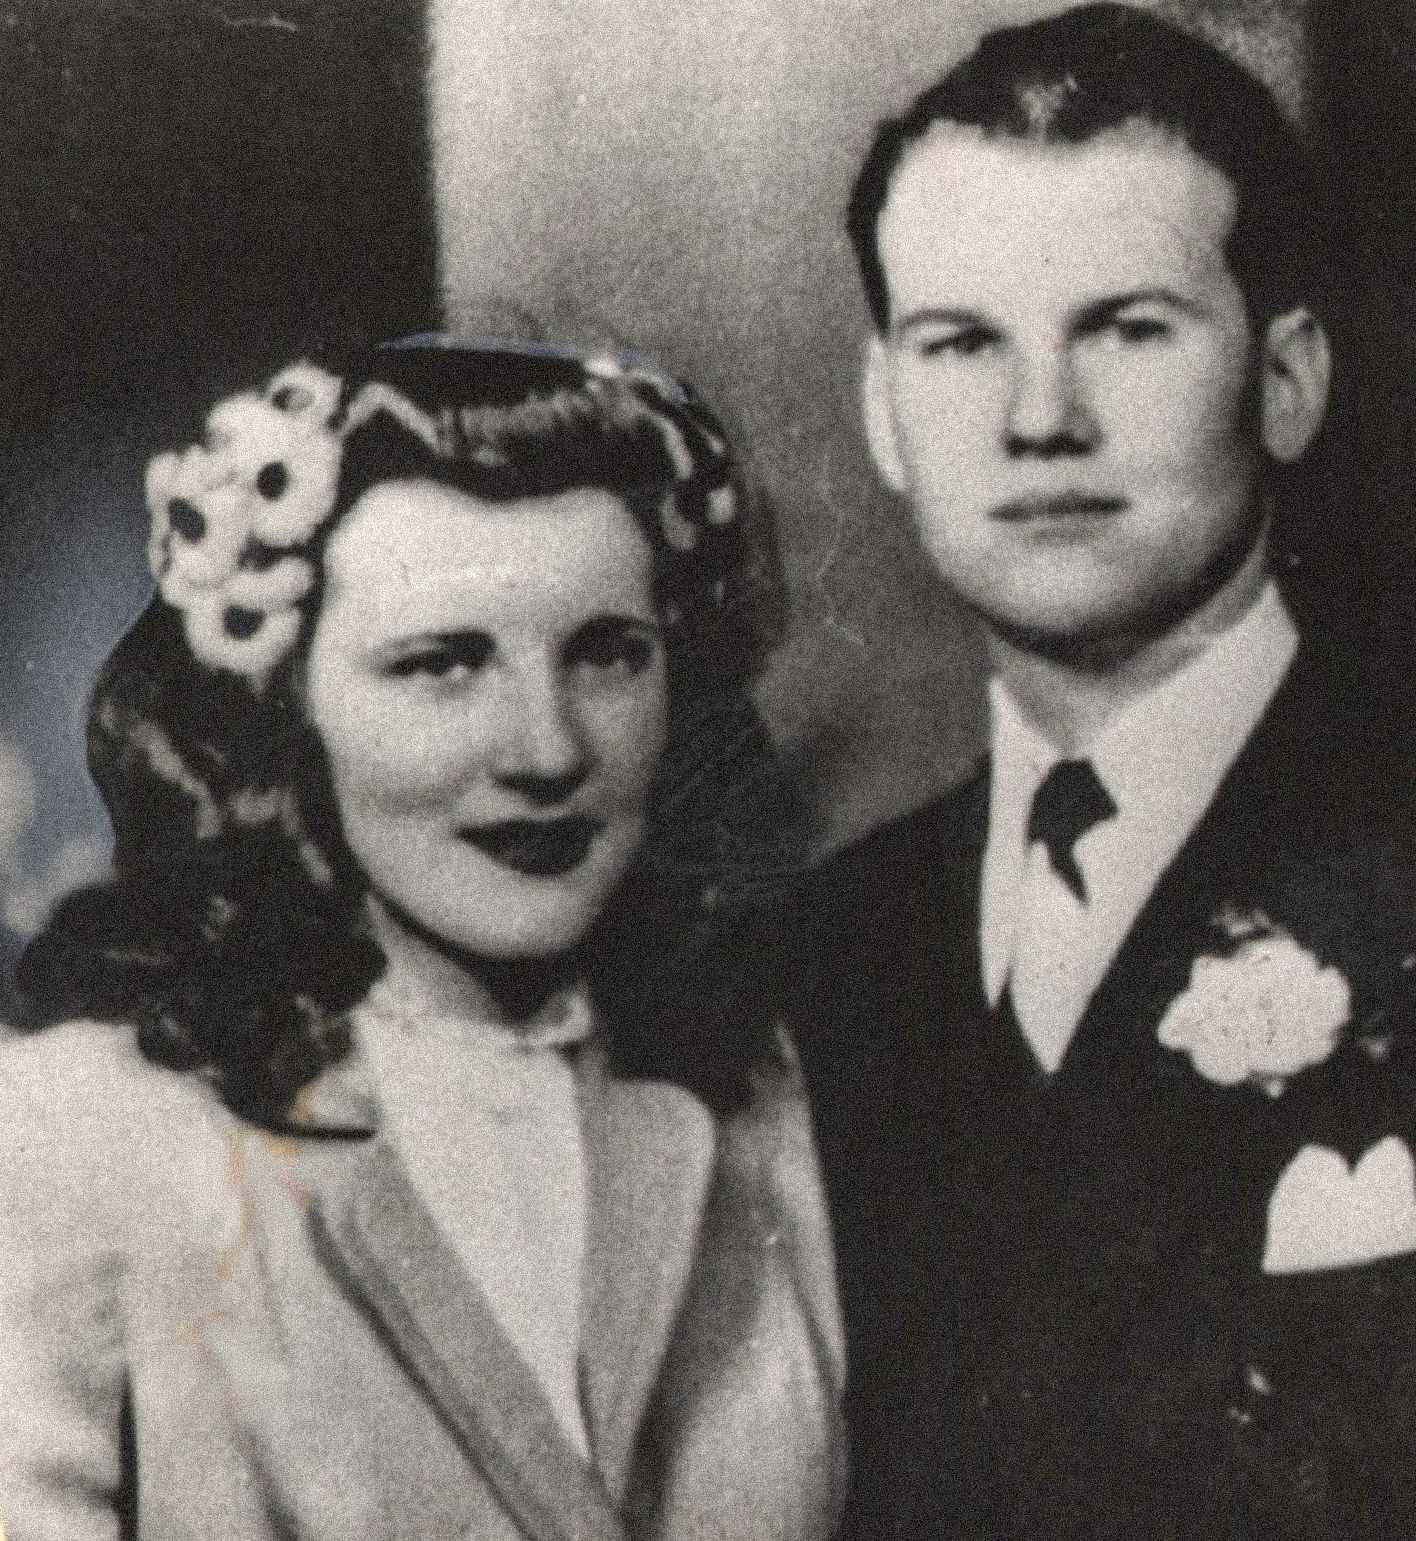 Na foto, estão Sam e Marilyn Sheppard, um casal jovem e aparentemente feliz. Os dois se casaram em 21 de fevereiro de 1945 e tiveram um filho juntos, Sam Reese Sheppard. Marilyn estava grávida de seu segundo filho no momento de seu assassinato.